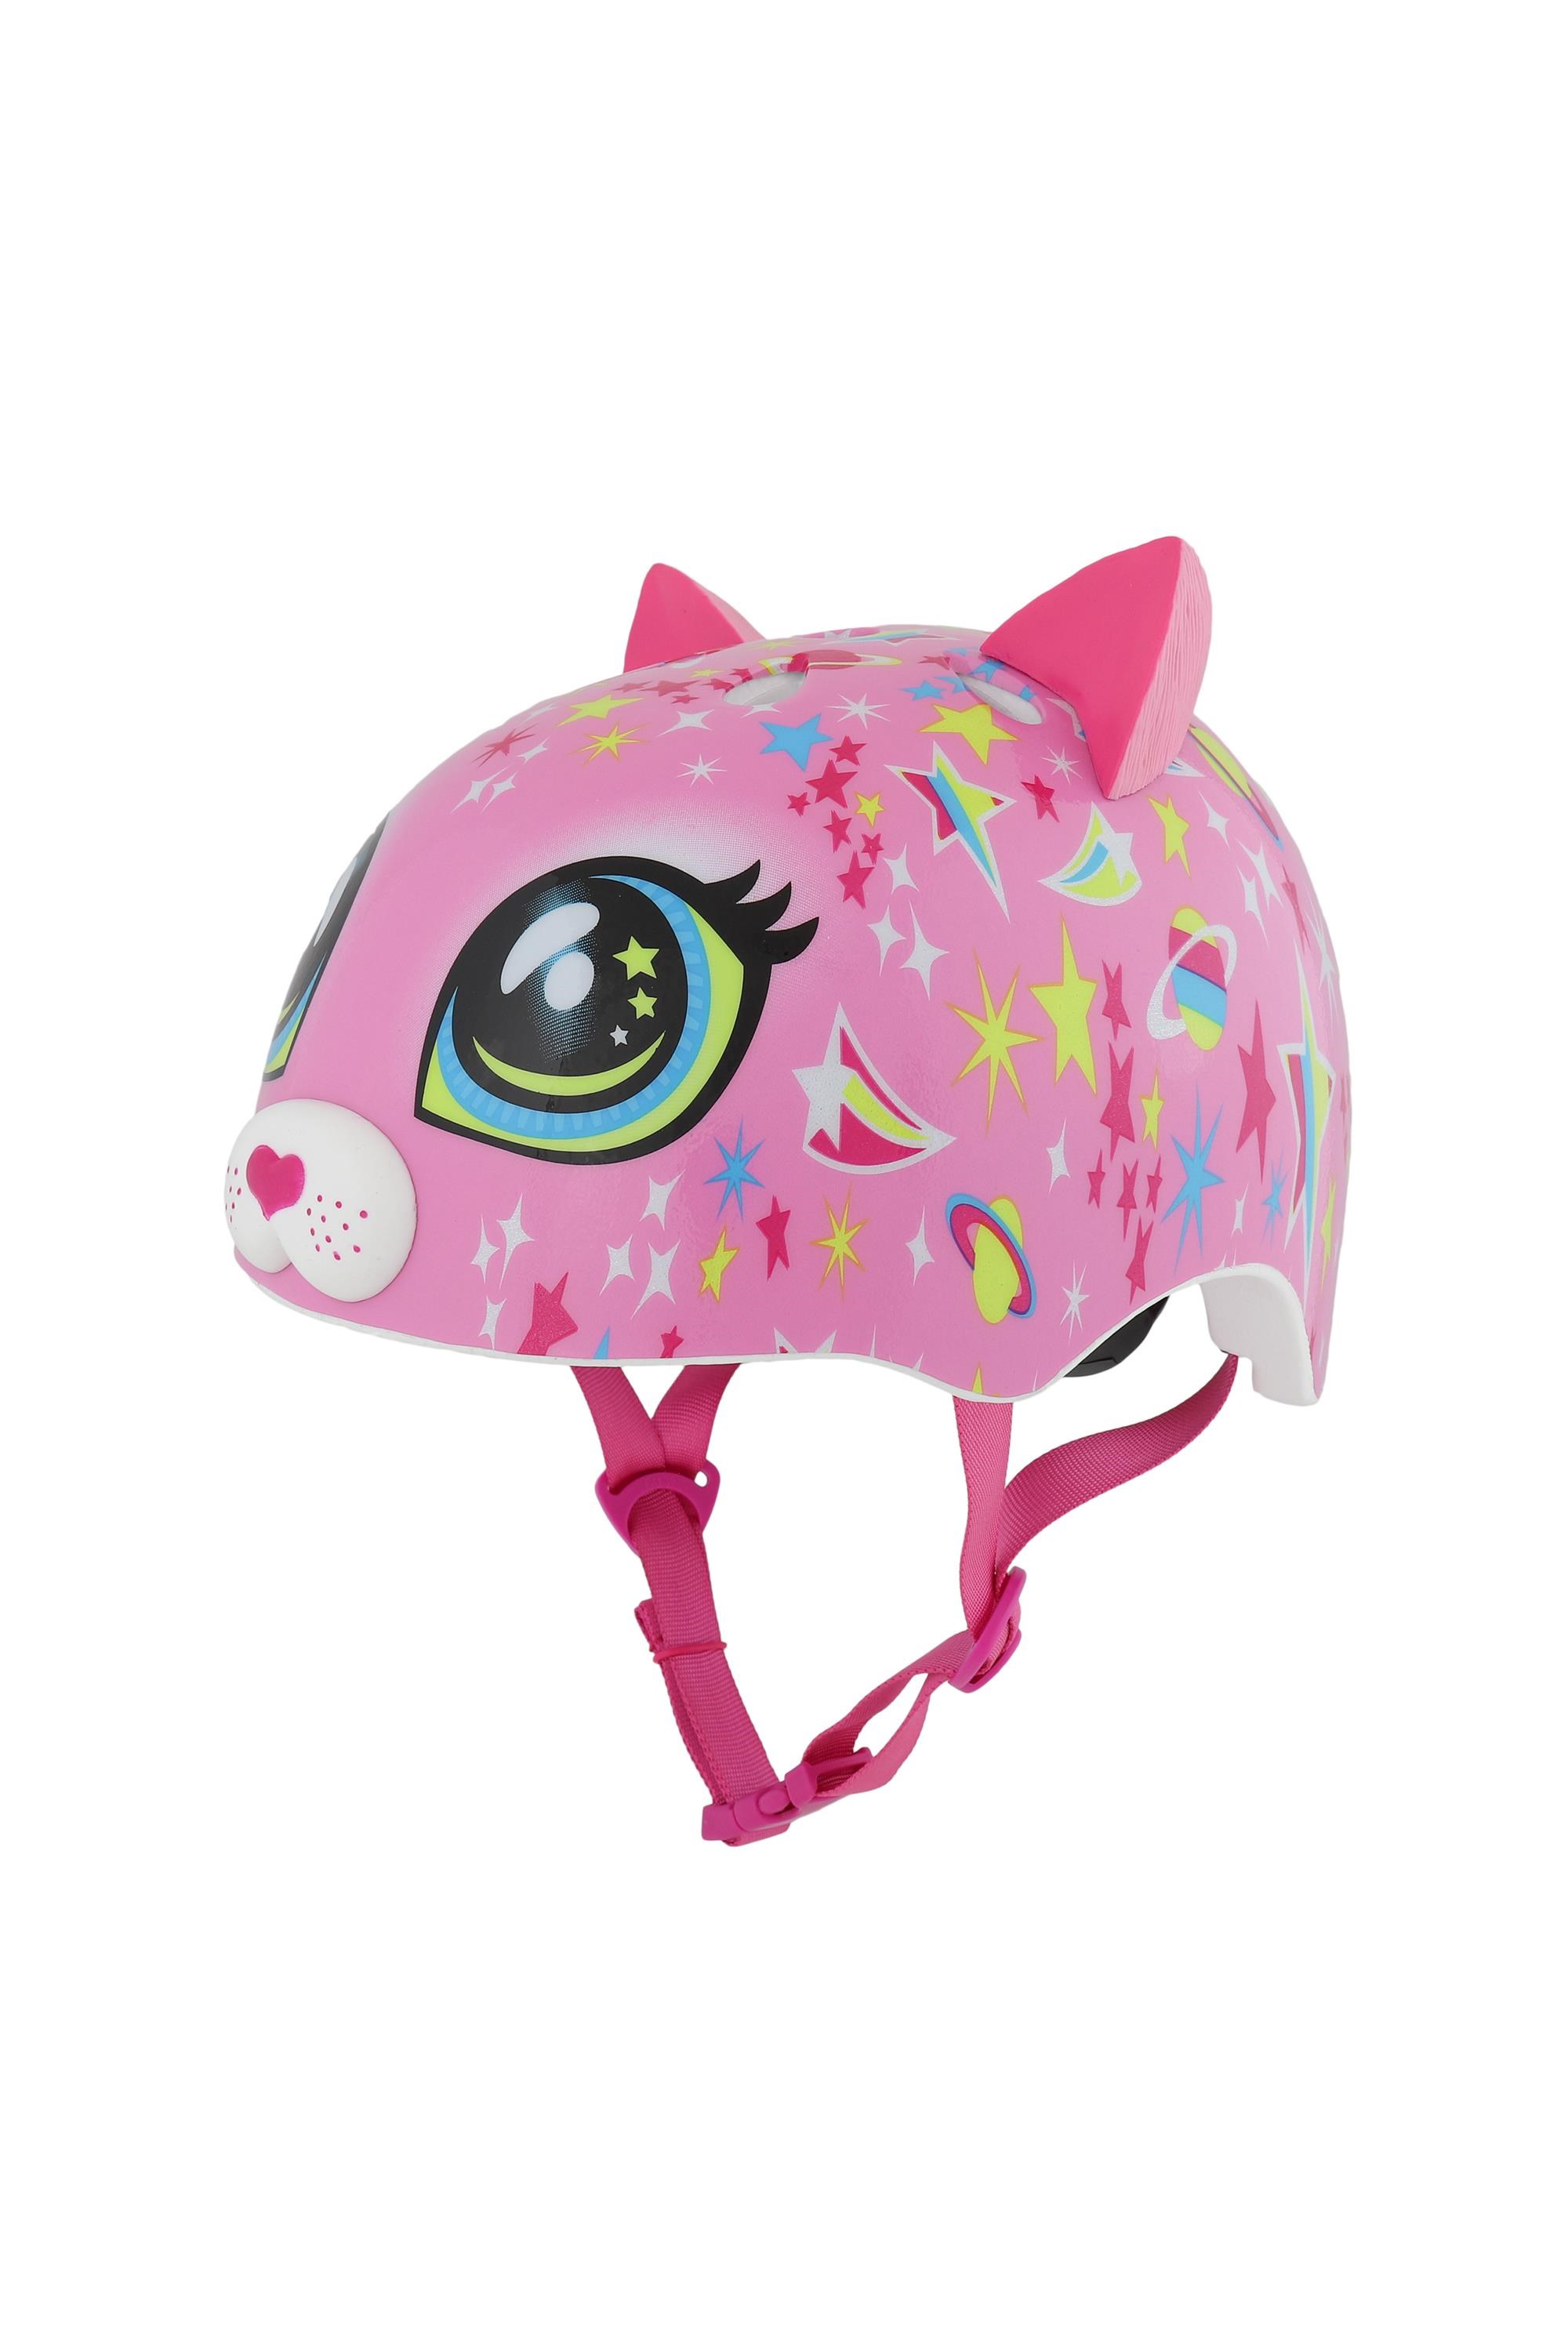 Astro Cat Pink Raskullz Kids Helmet (5+ Years) -